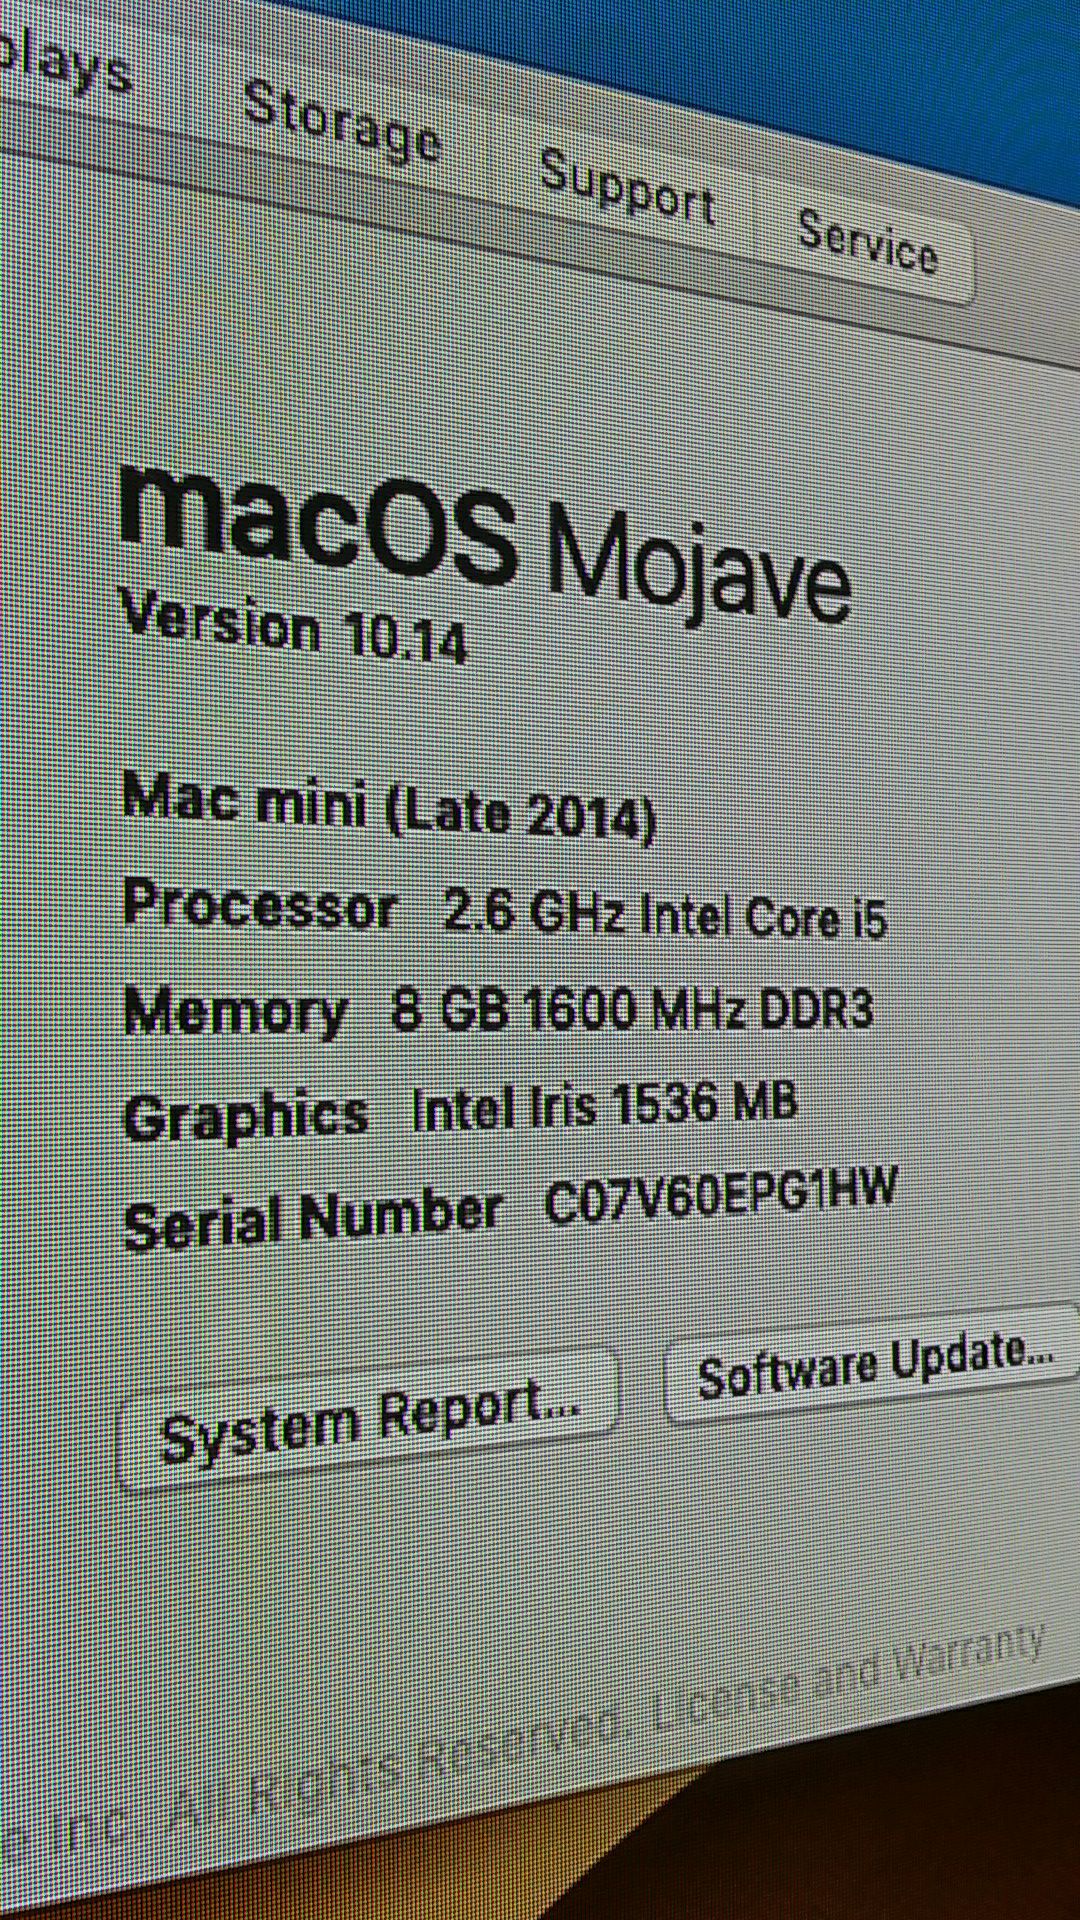 Mac mini i5